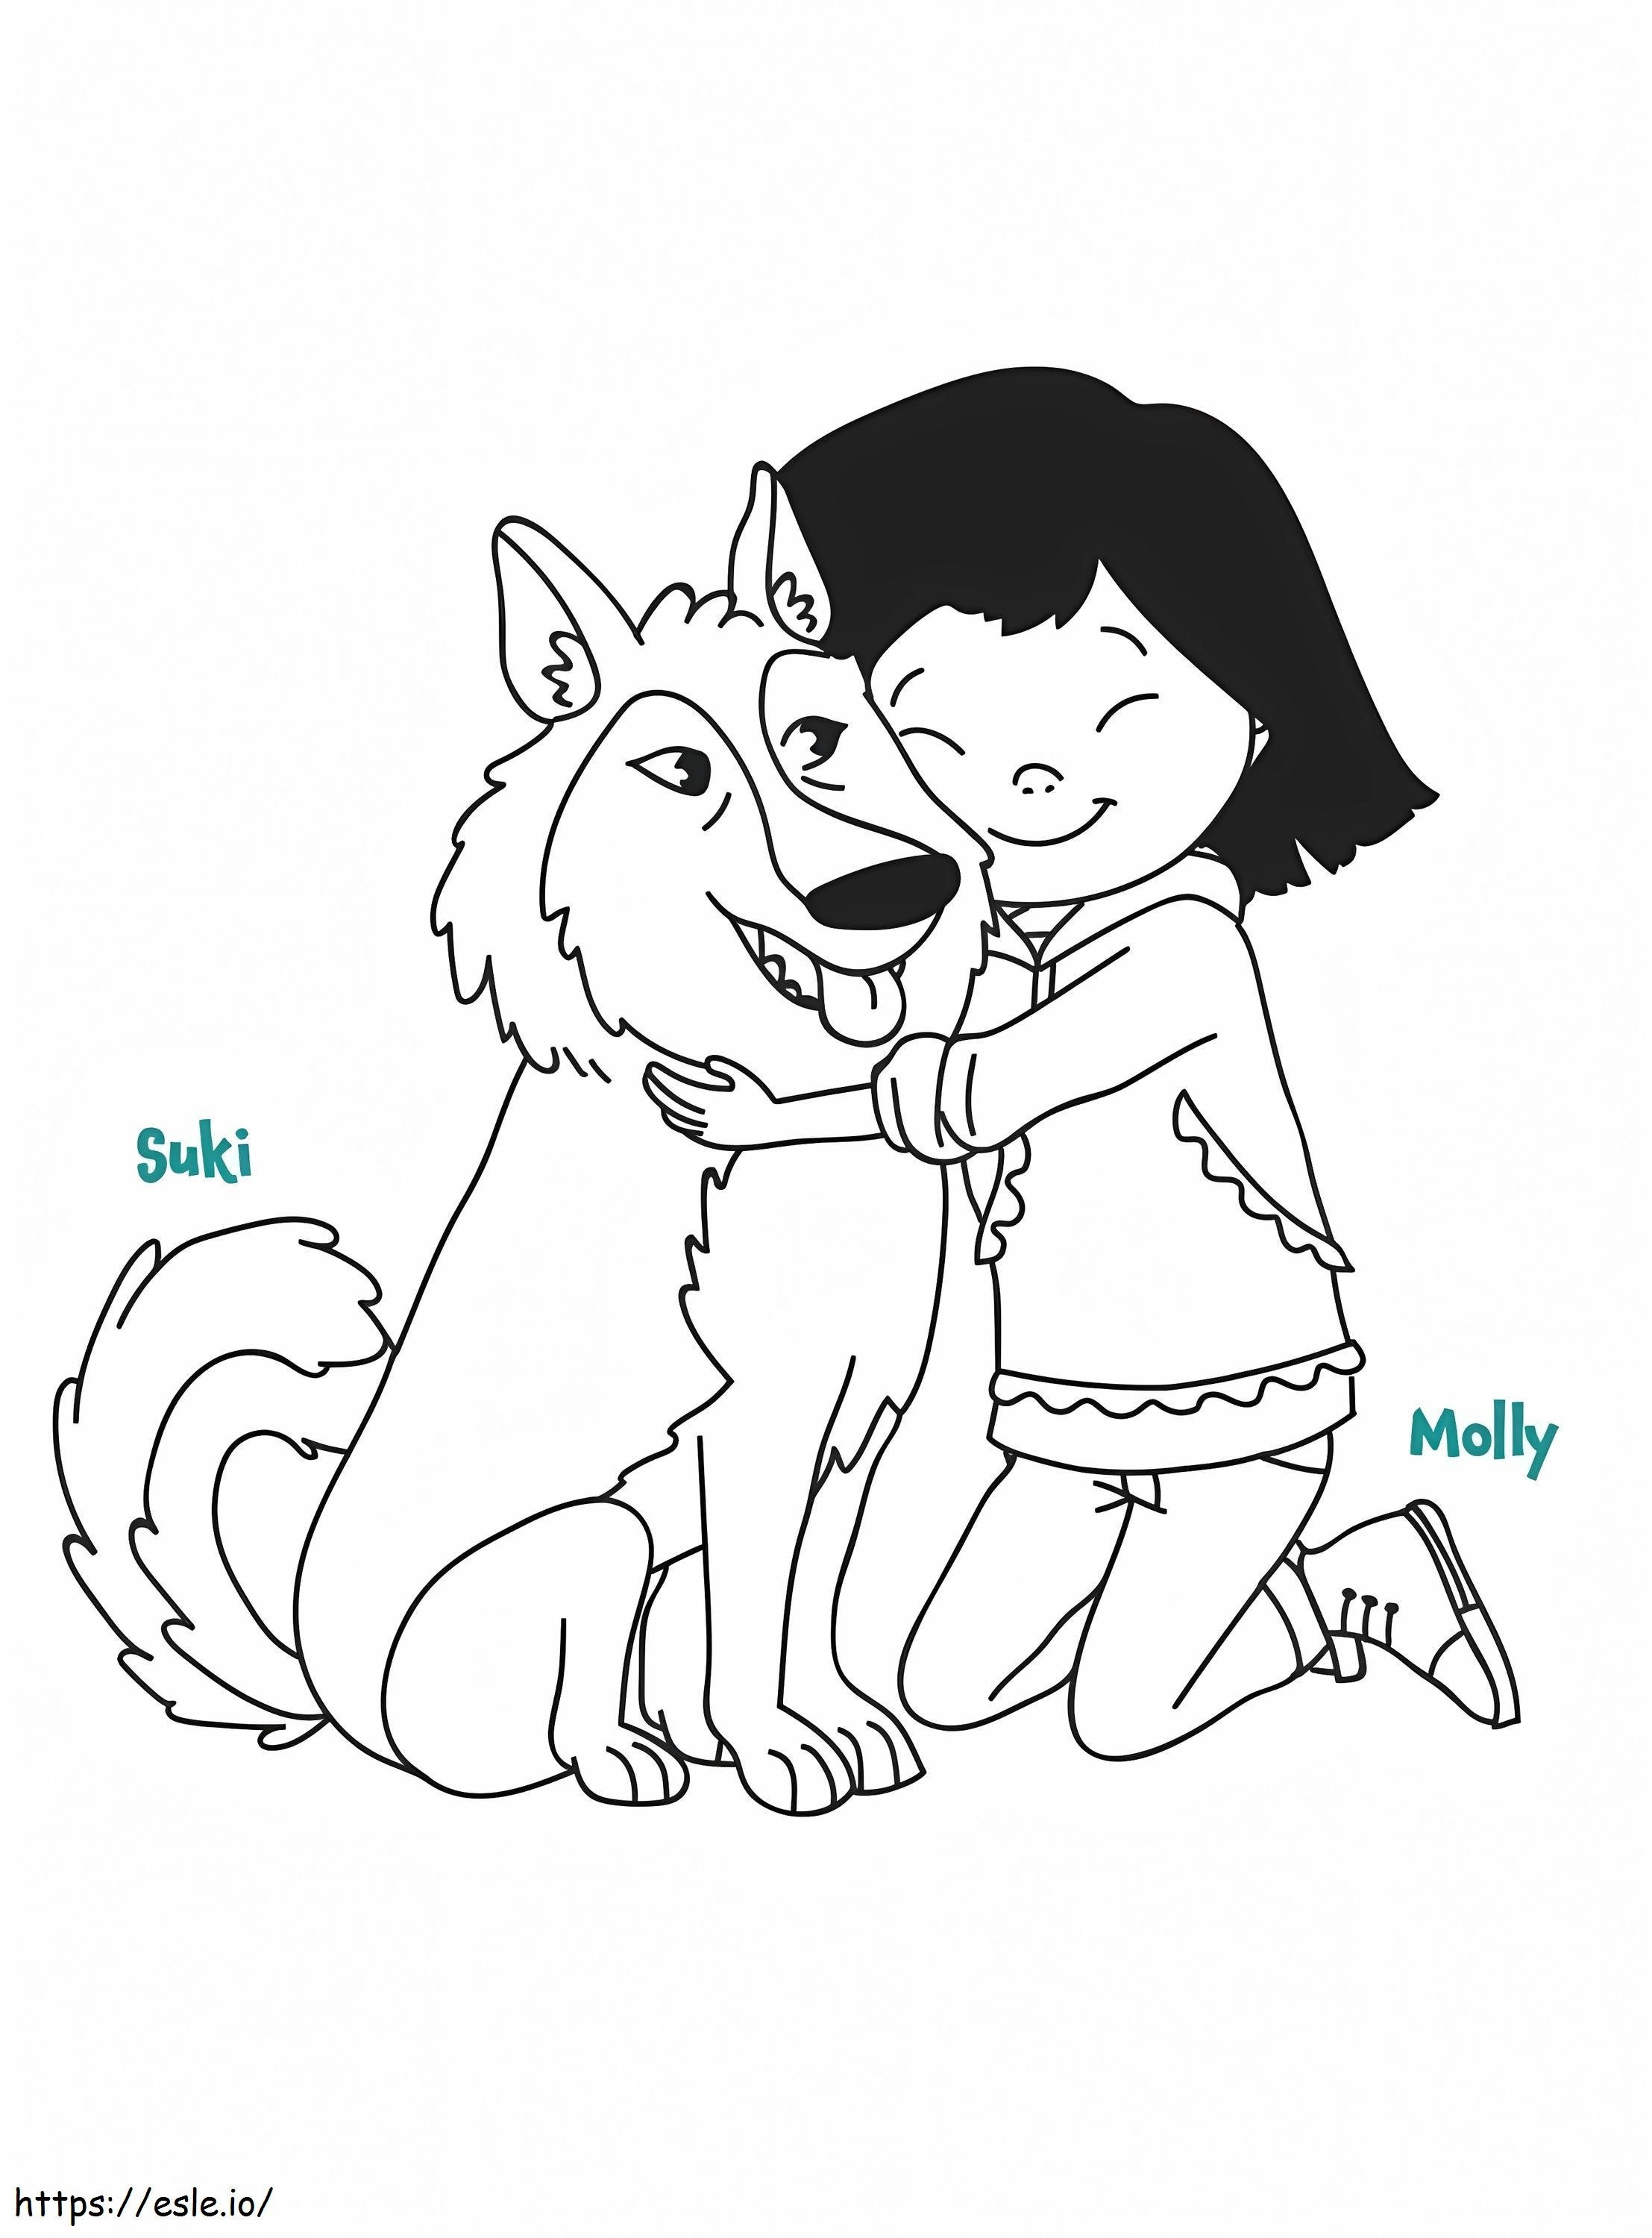 Molly i Suki z Molly z Denali kolorowanka